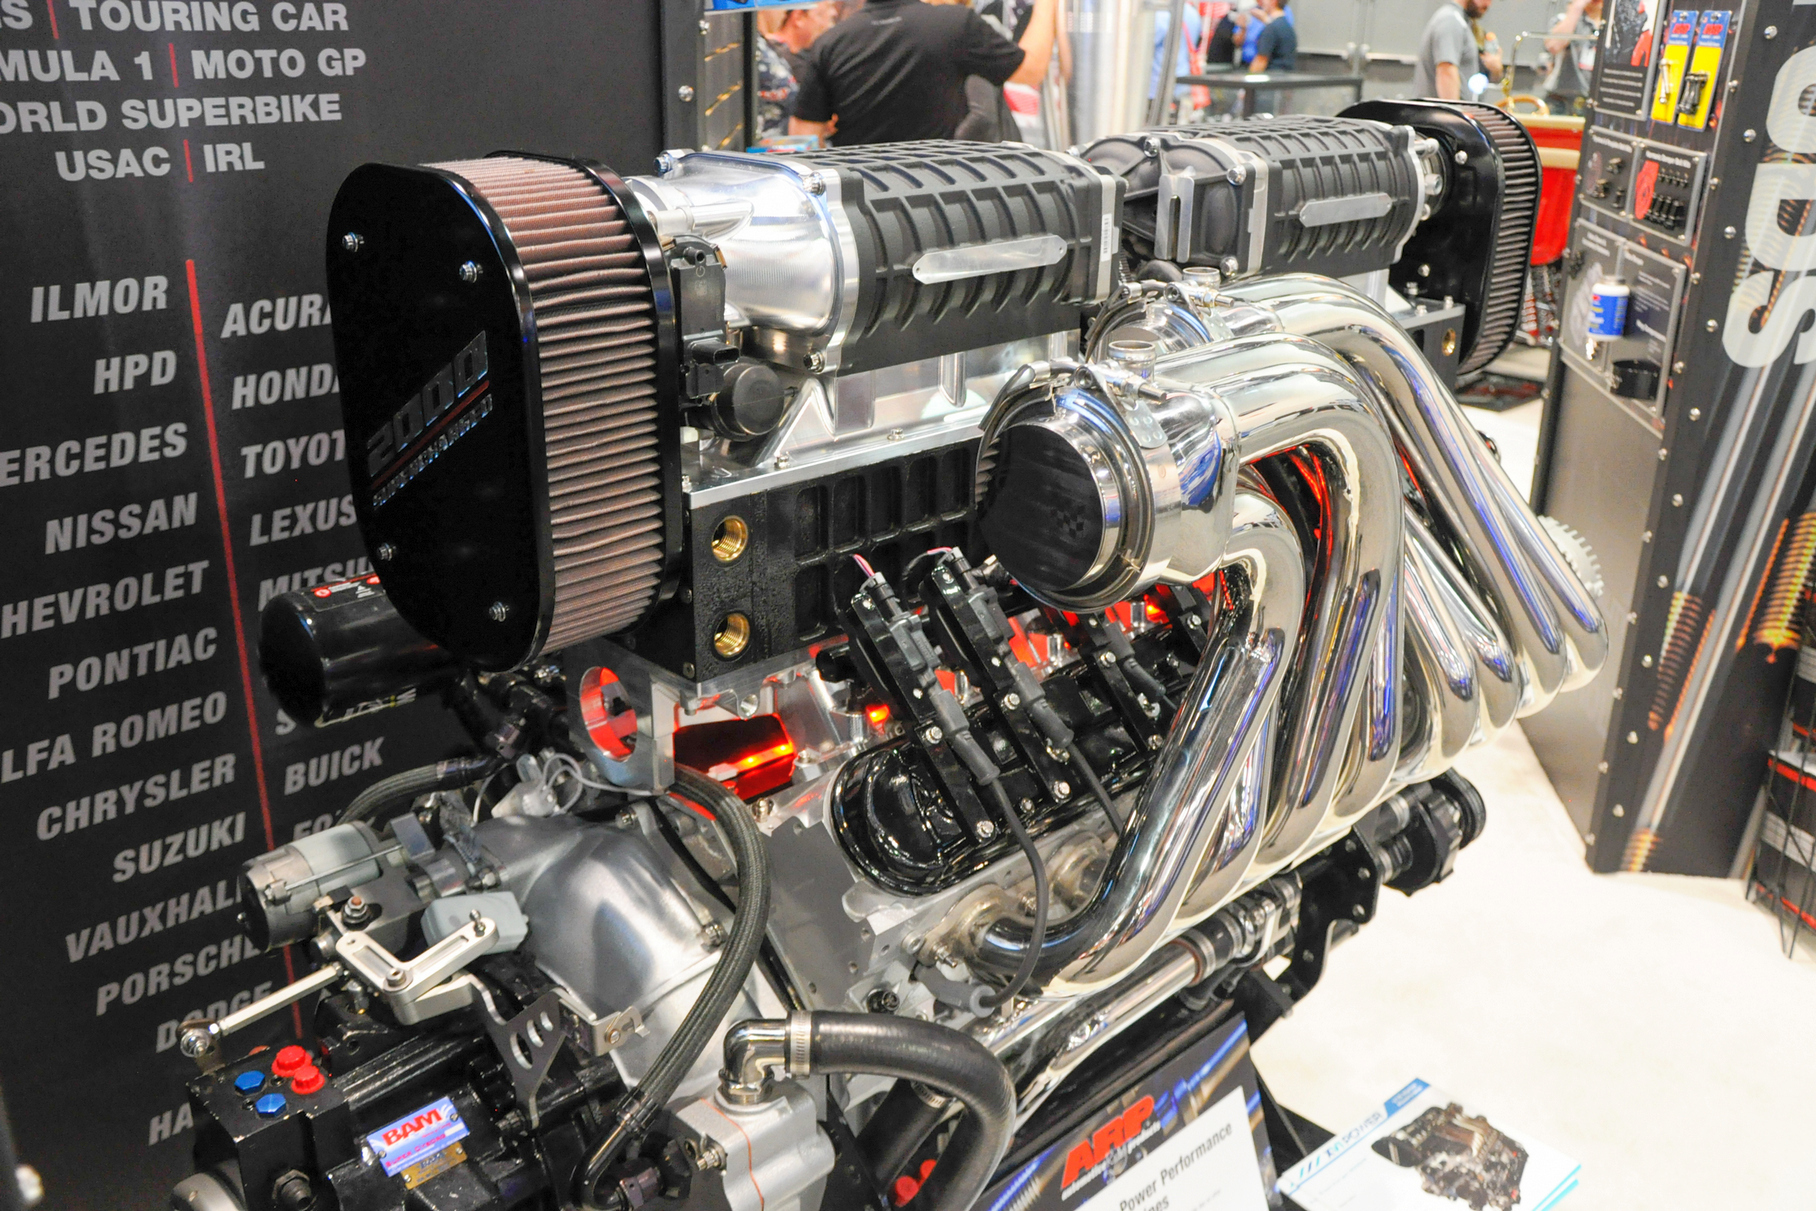 В 2019 году на выставке SEMA представили компрессорную версию мотора V16. Её мощность составляет от 1800 до 2000 лошадиных сил, в зависимости от сорта топлива